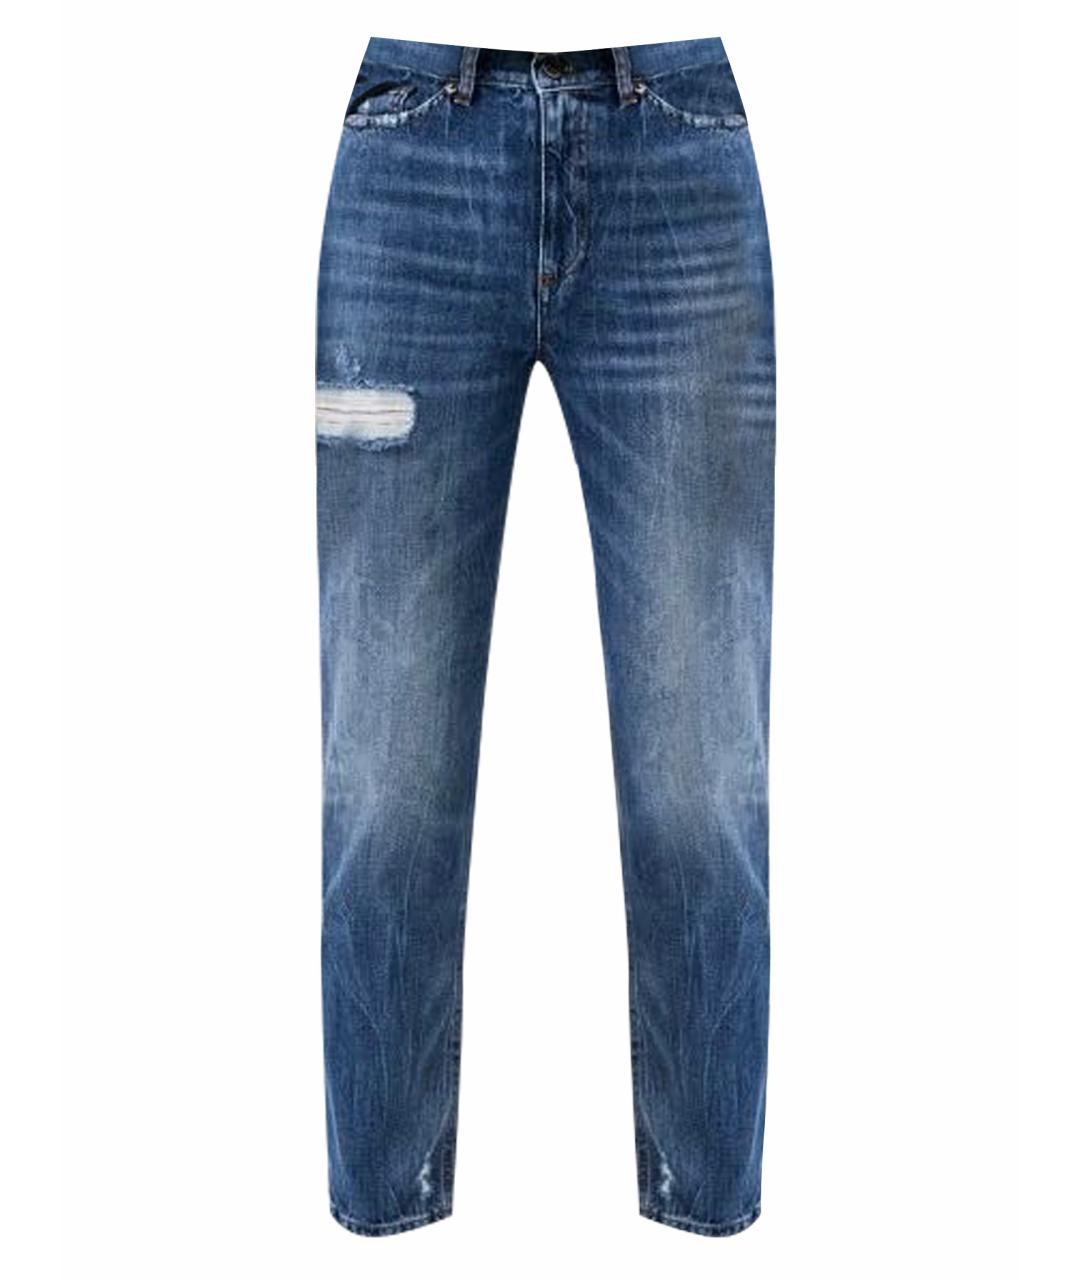 TWIN-SET Синие хлопковые прямые джинсы, фото 1